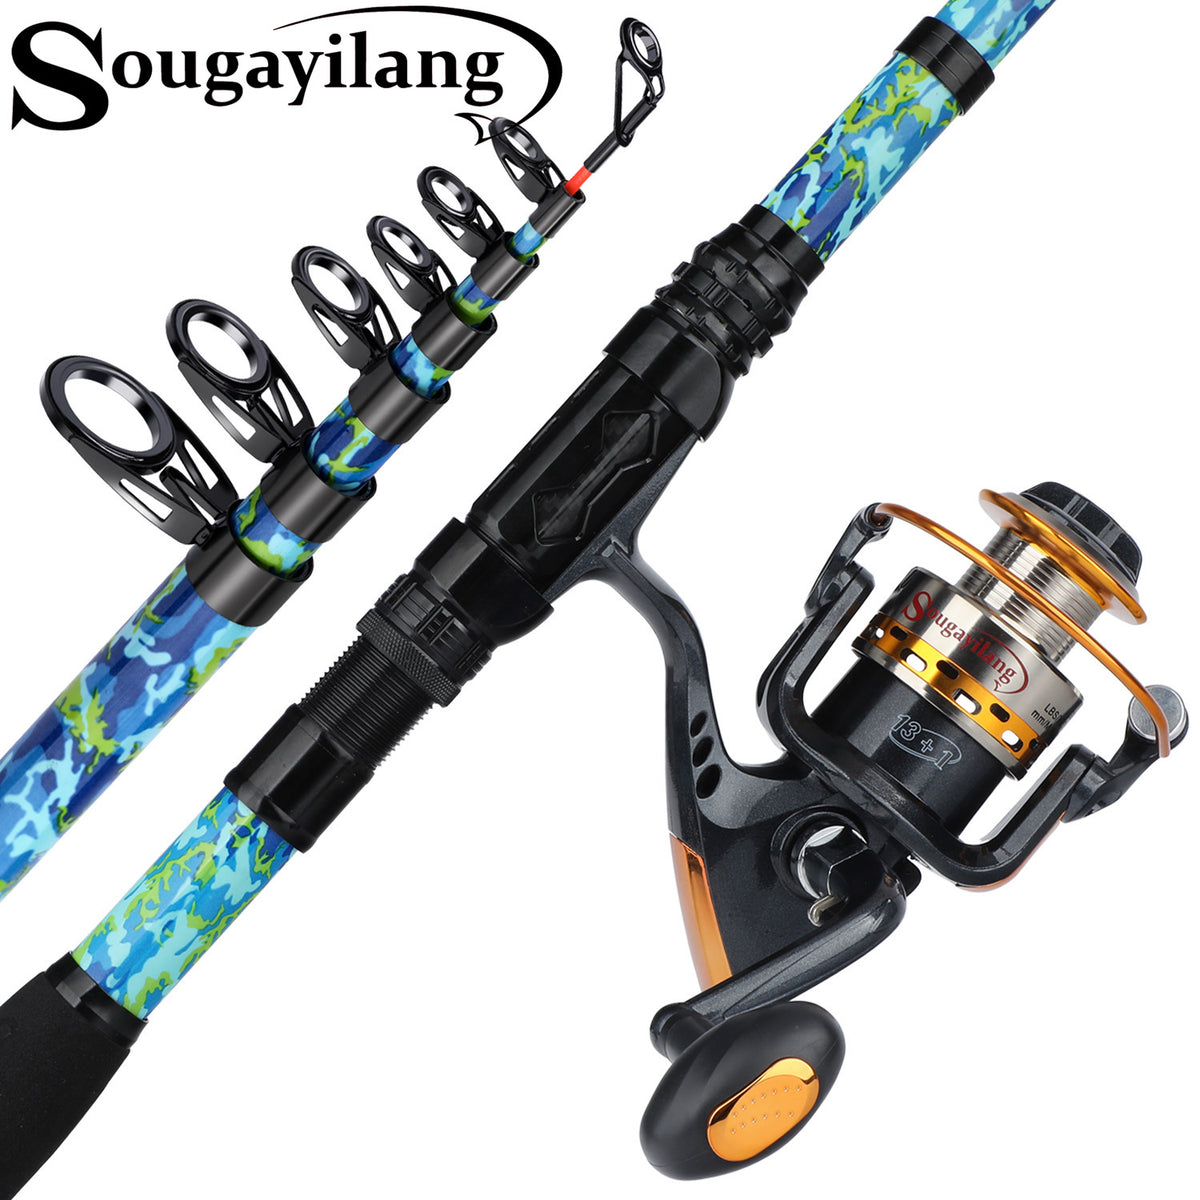  Sougayilang Telescopic Fishing Rod Reel Combos with